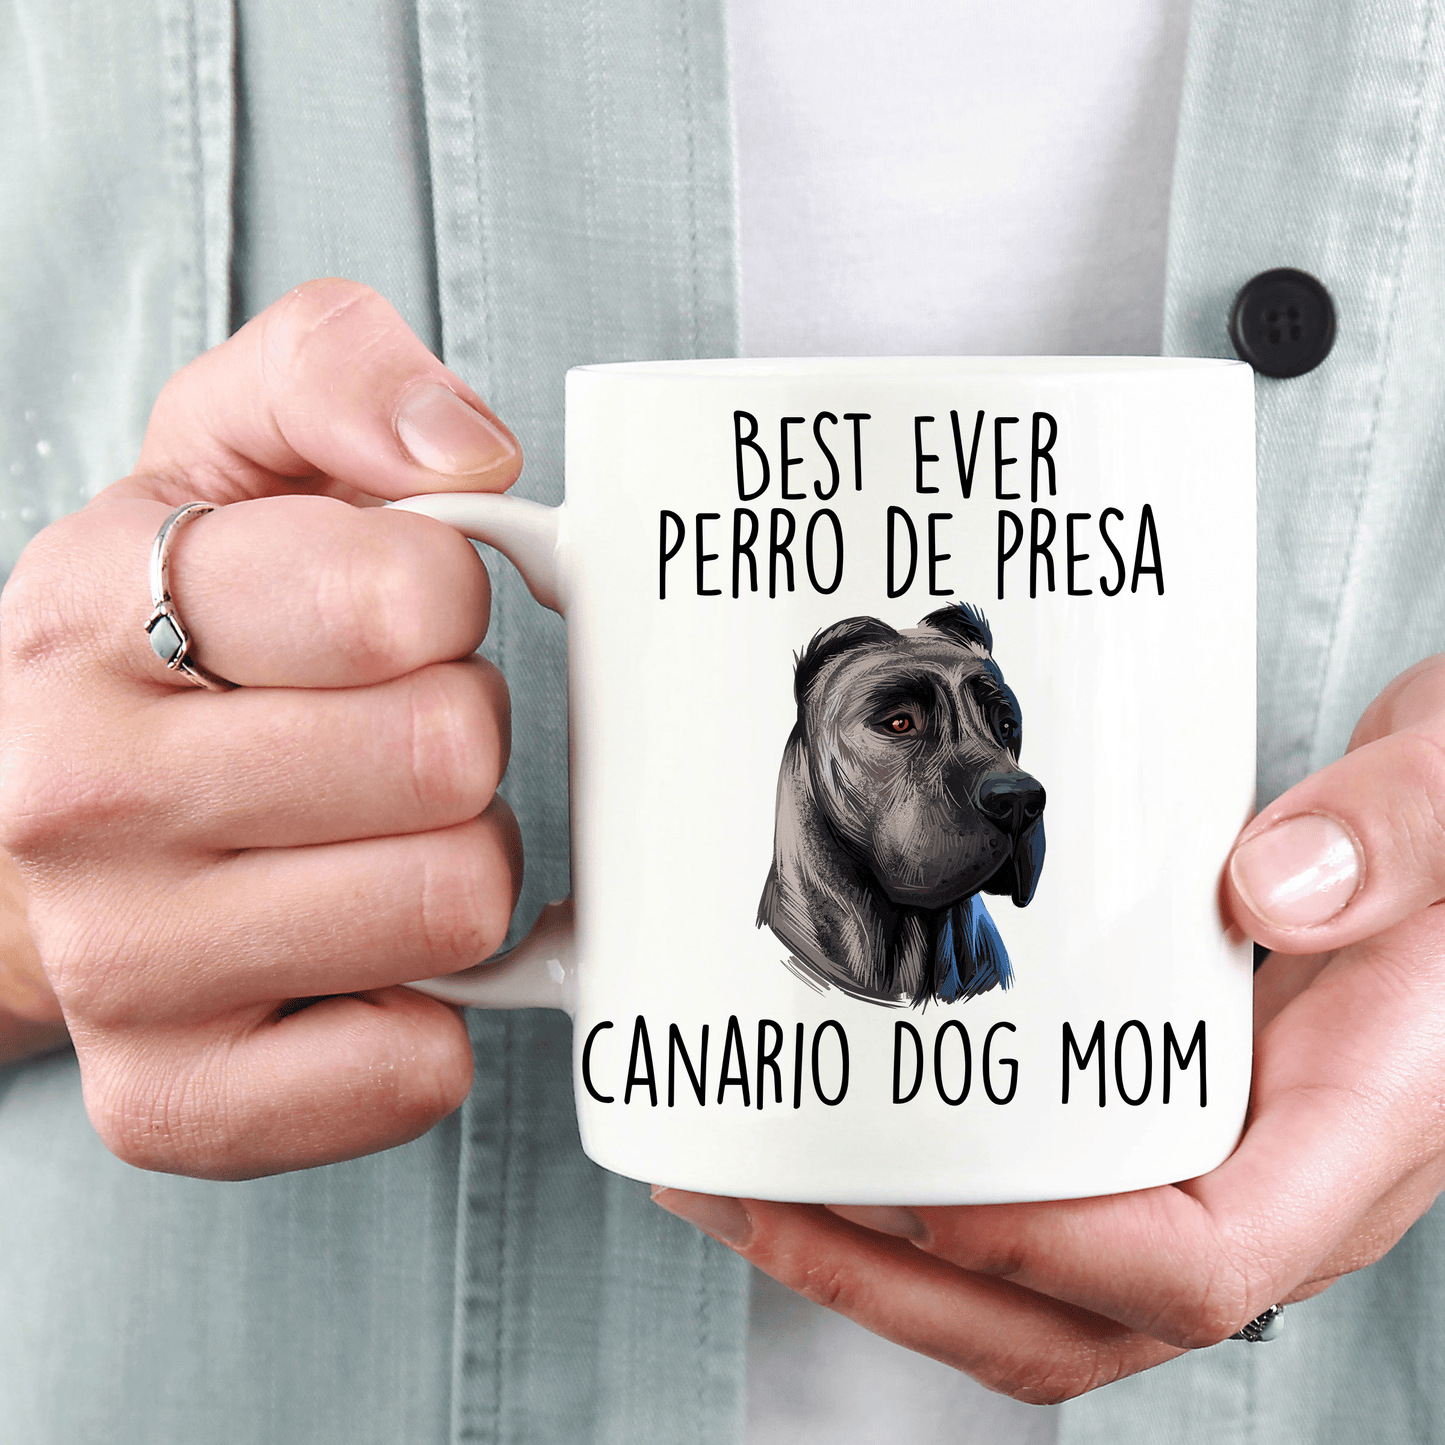 Best Ever Perro de Presa Canario Dog Mom Ceramic Coffee Mug